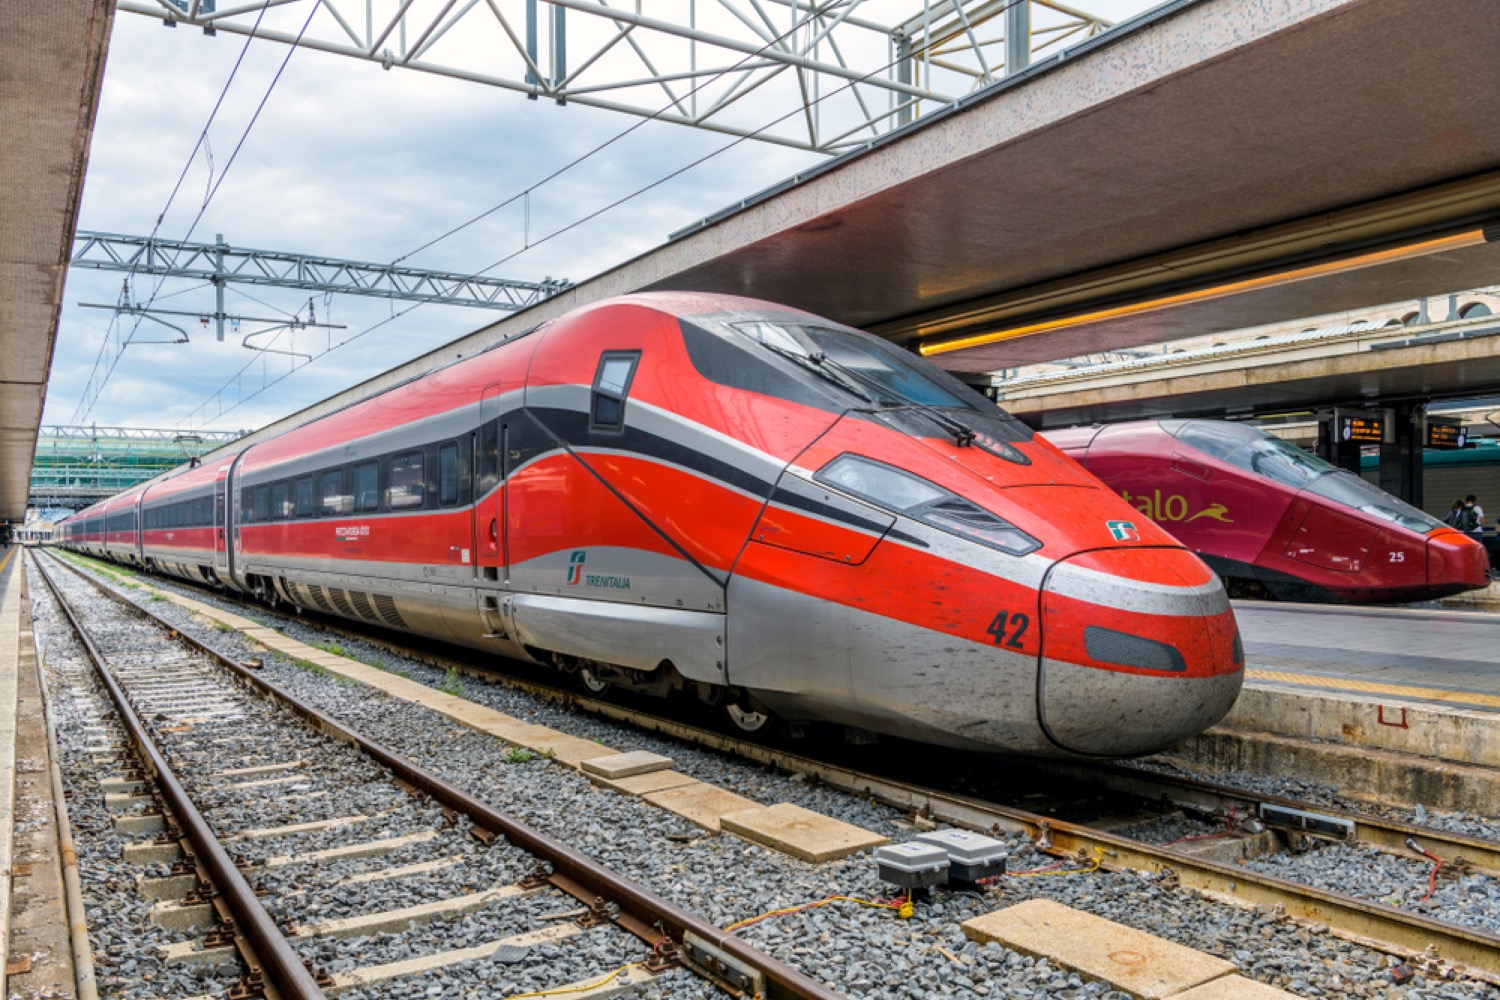 Firmato protocollo legalità per nuova linea Alta velocità Salerno-Reggio Calabria